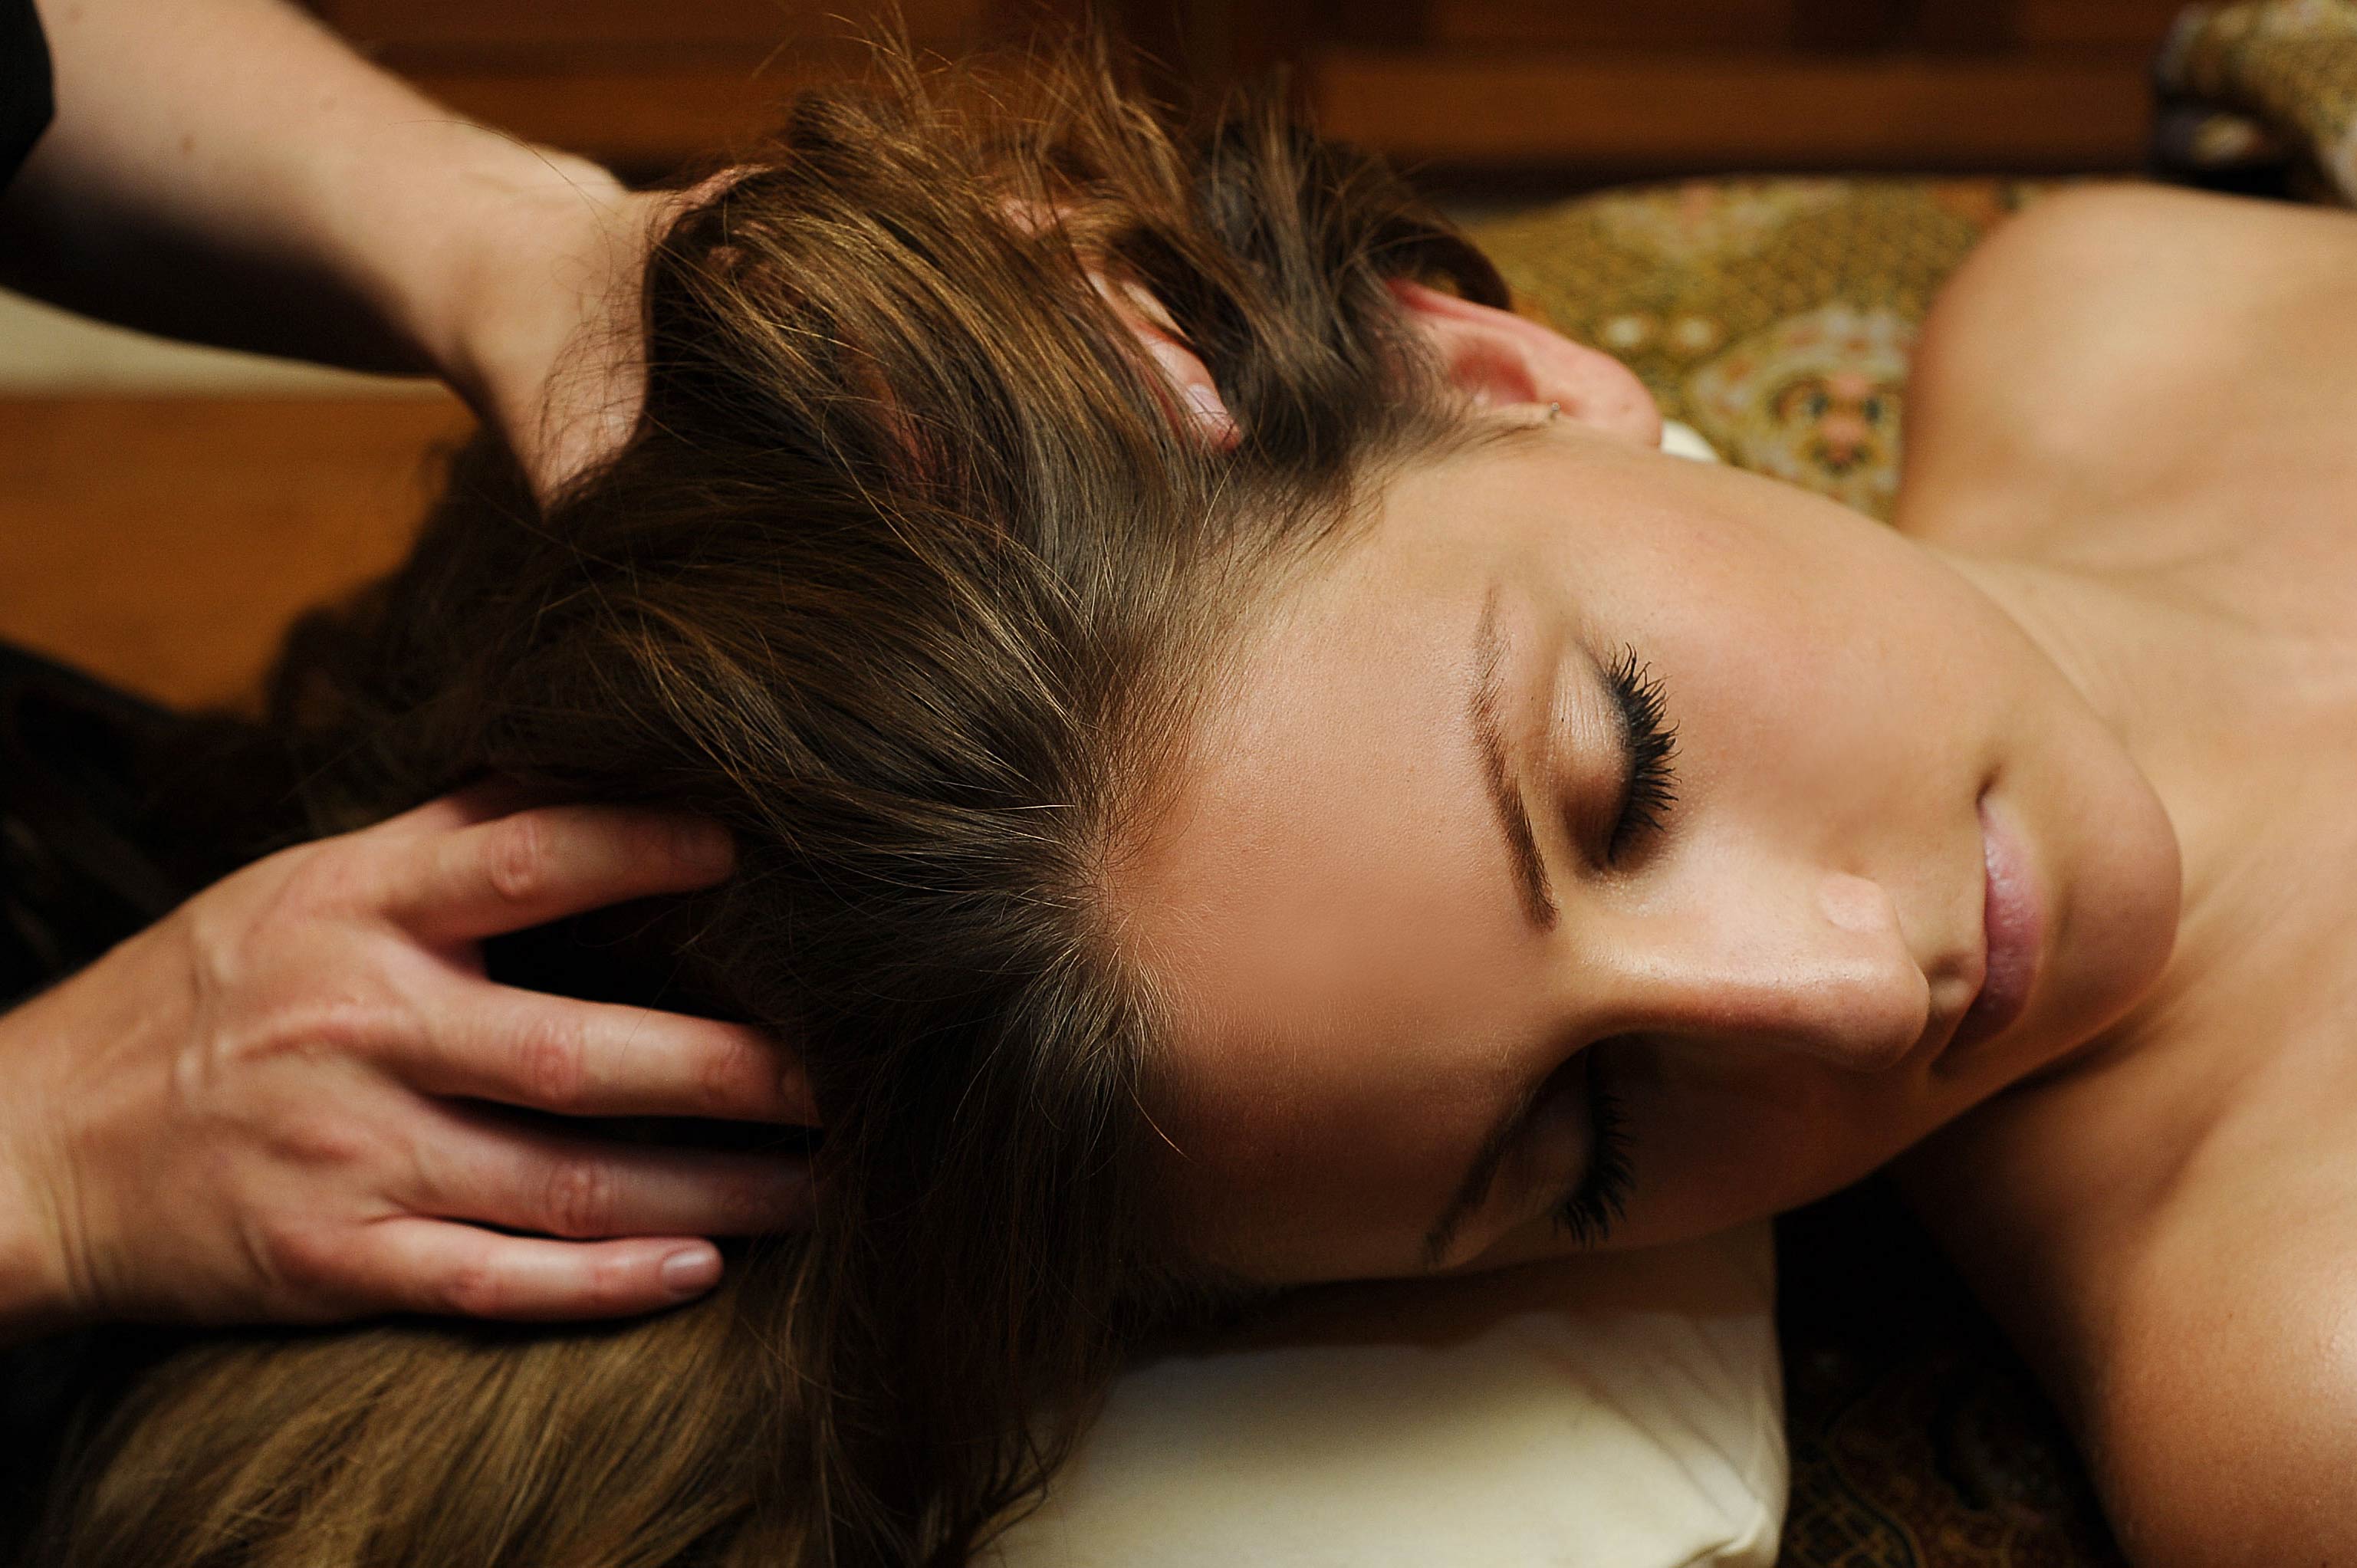 Ayurvedic Head Massage